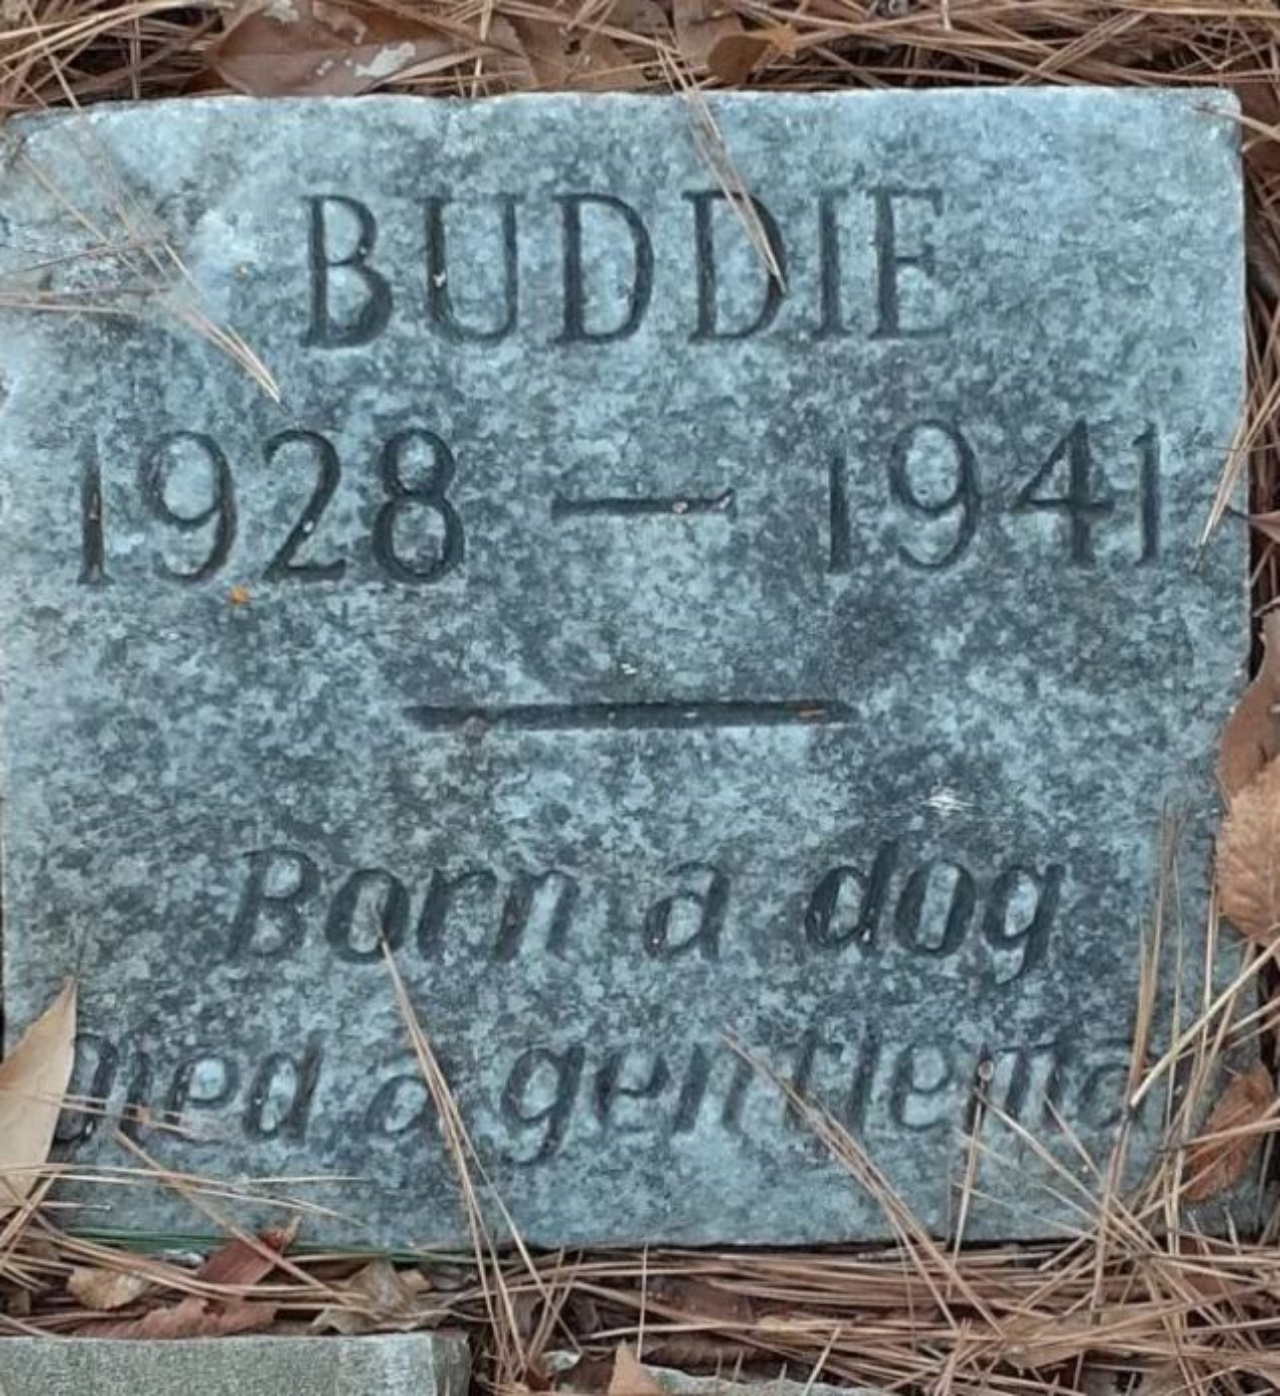 Una lapide a nome Buddie